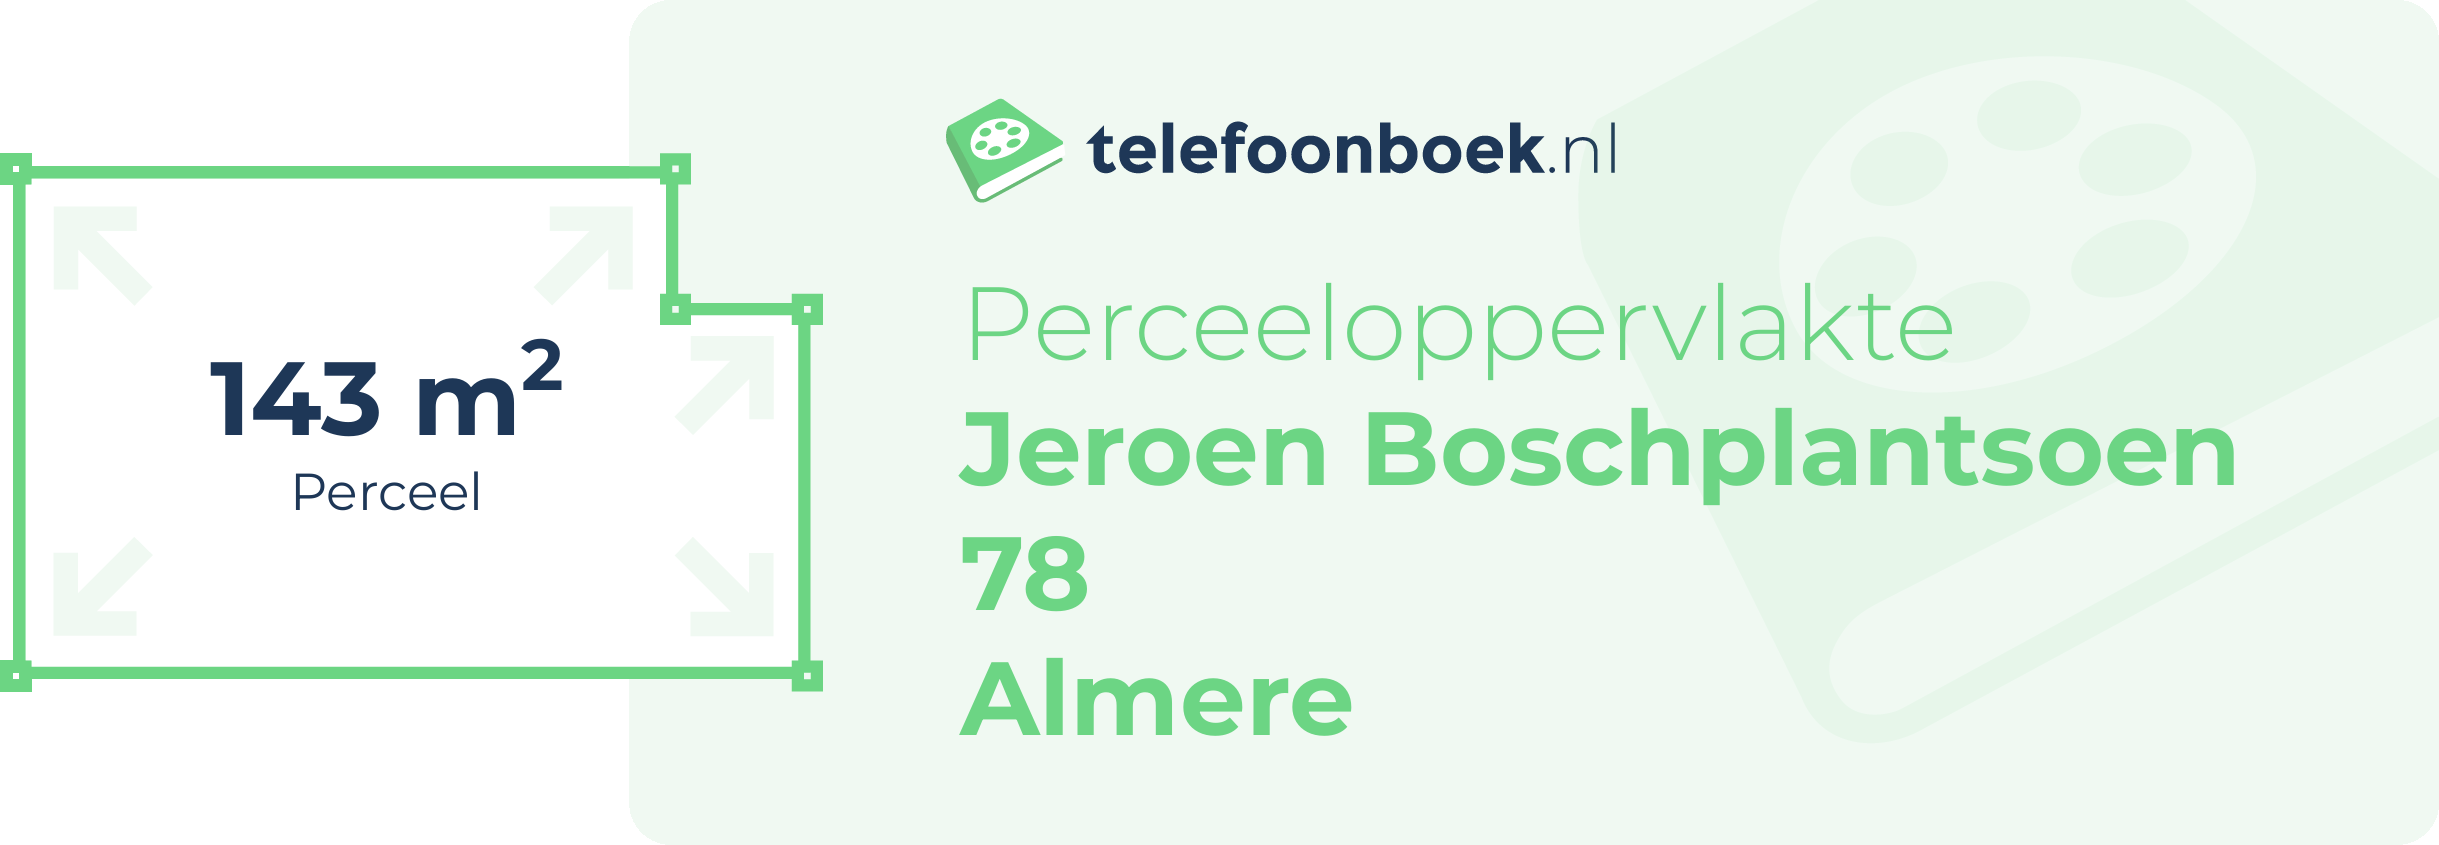 Perceeloppervlakte Jeroen Boschplantsoen 78 Almere